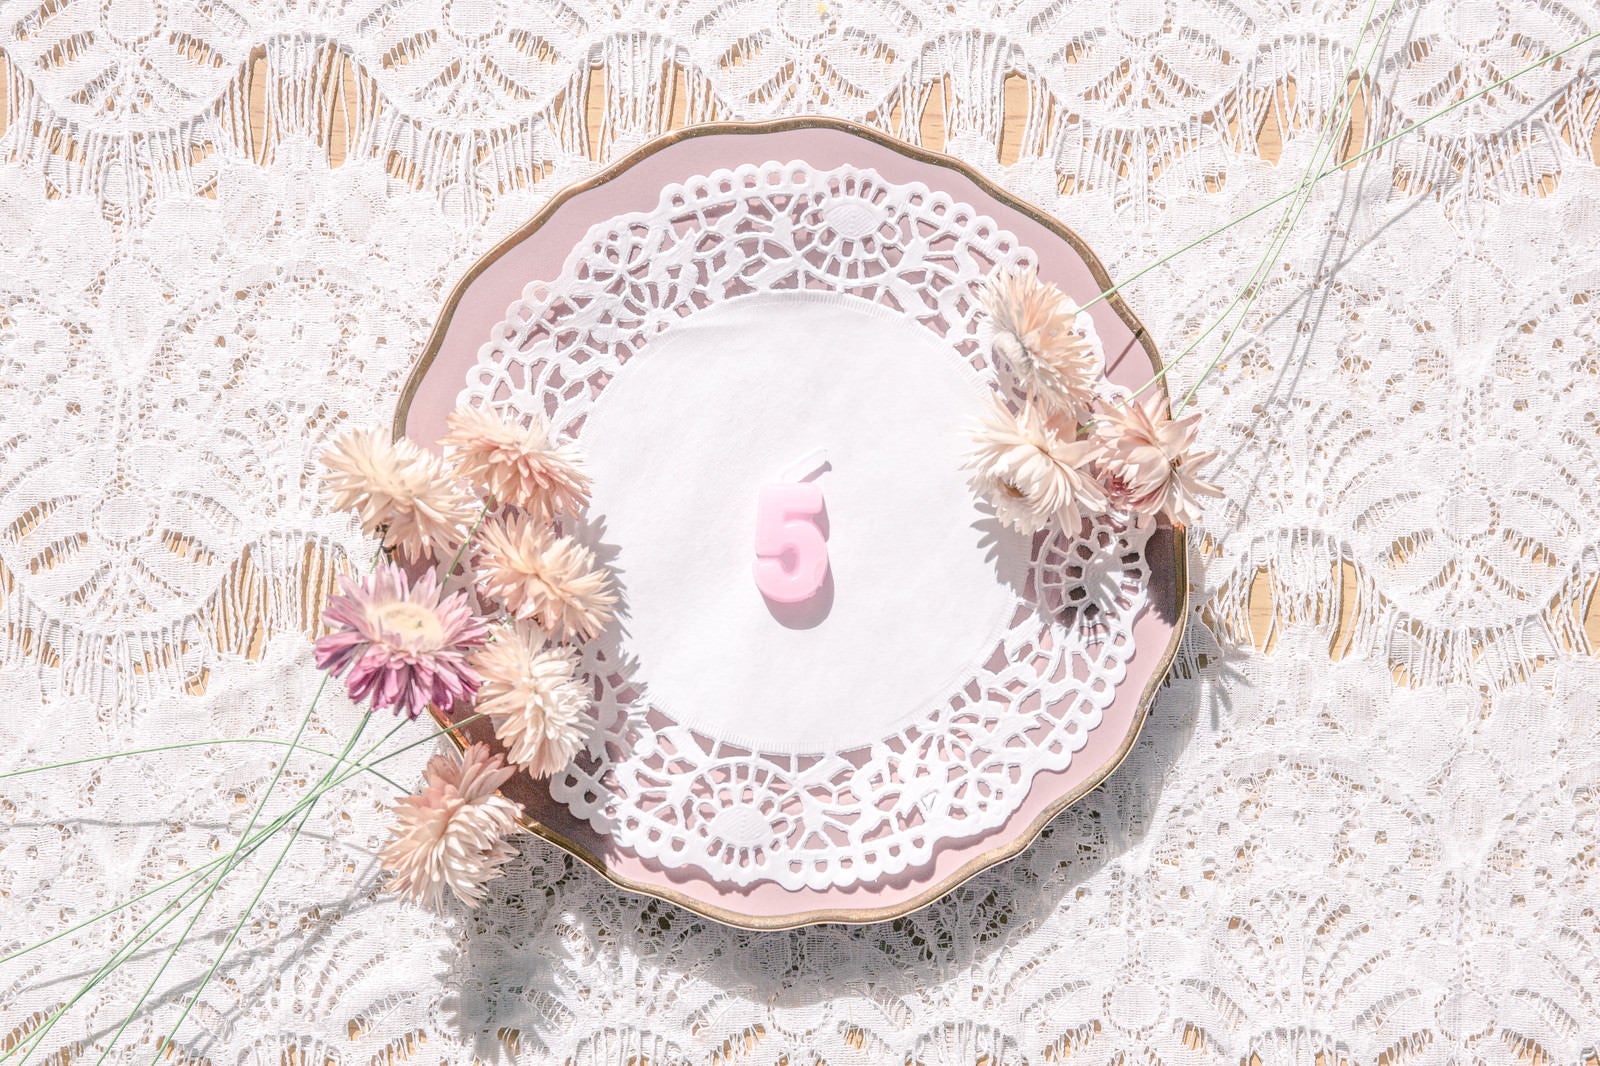 「アンティークなお皿と数字の「5」」の写真